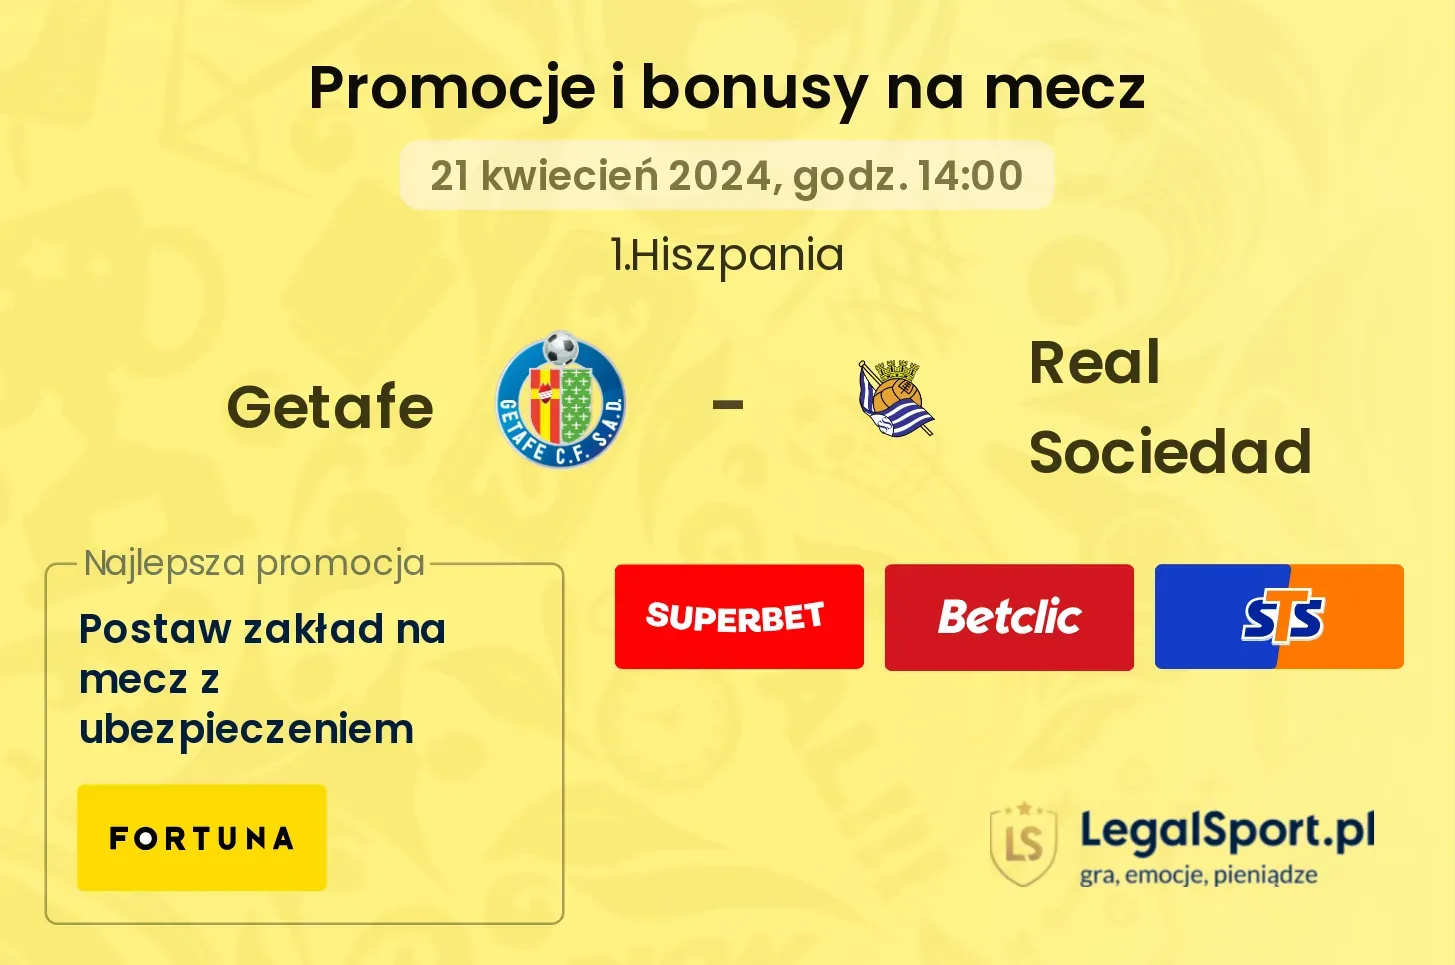 Getafe - Real Sociedad promocje bonusy na mecz